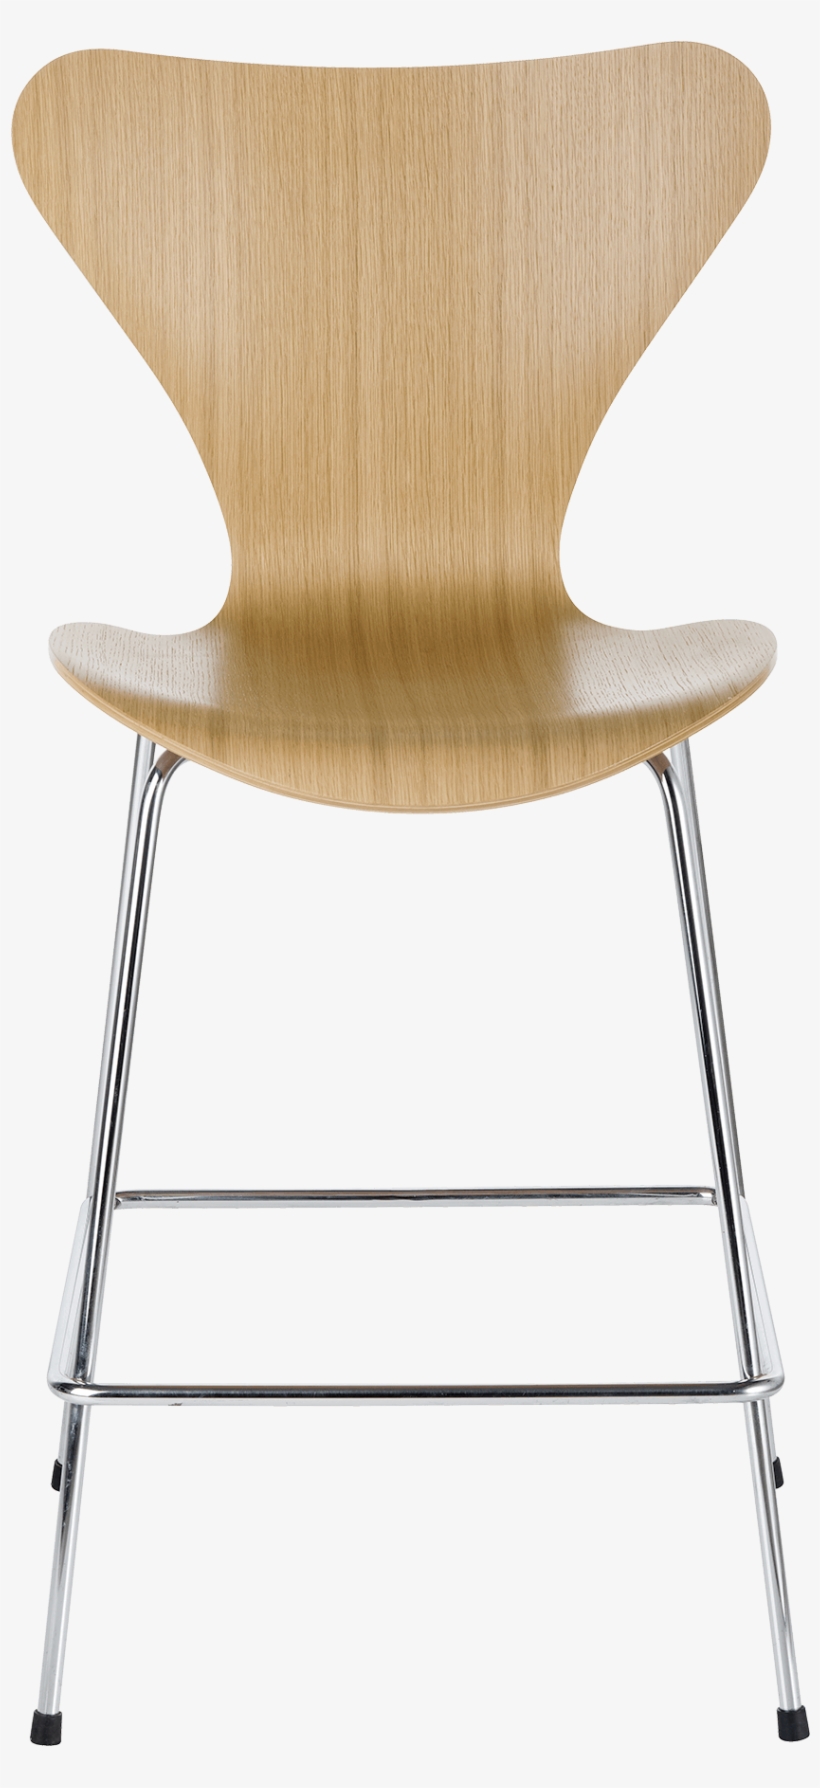 Series 7 Chair Arne Jacobsen Elm Bar Stool - Fritz Hansen Series 7 Stool, transparent png #3250367